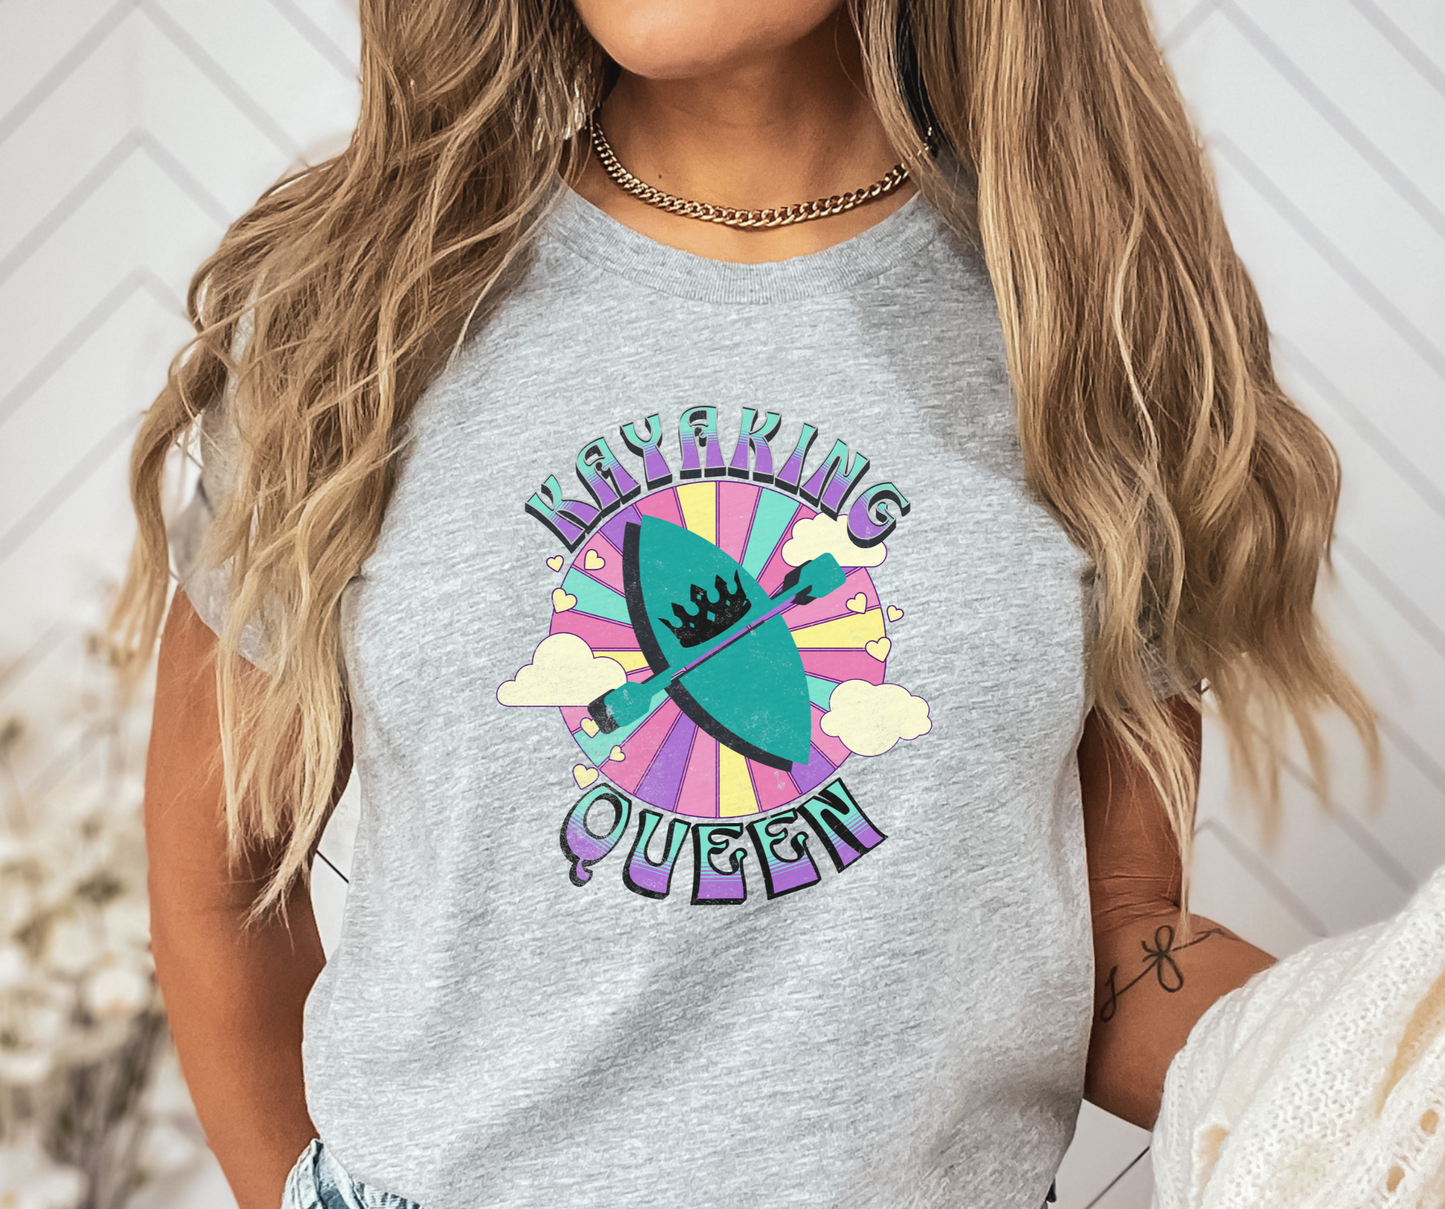 Kayaking Queen T-Shirt